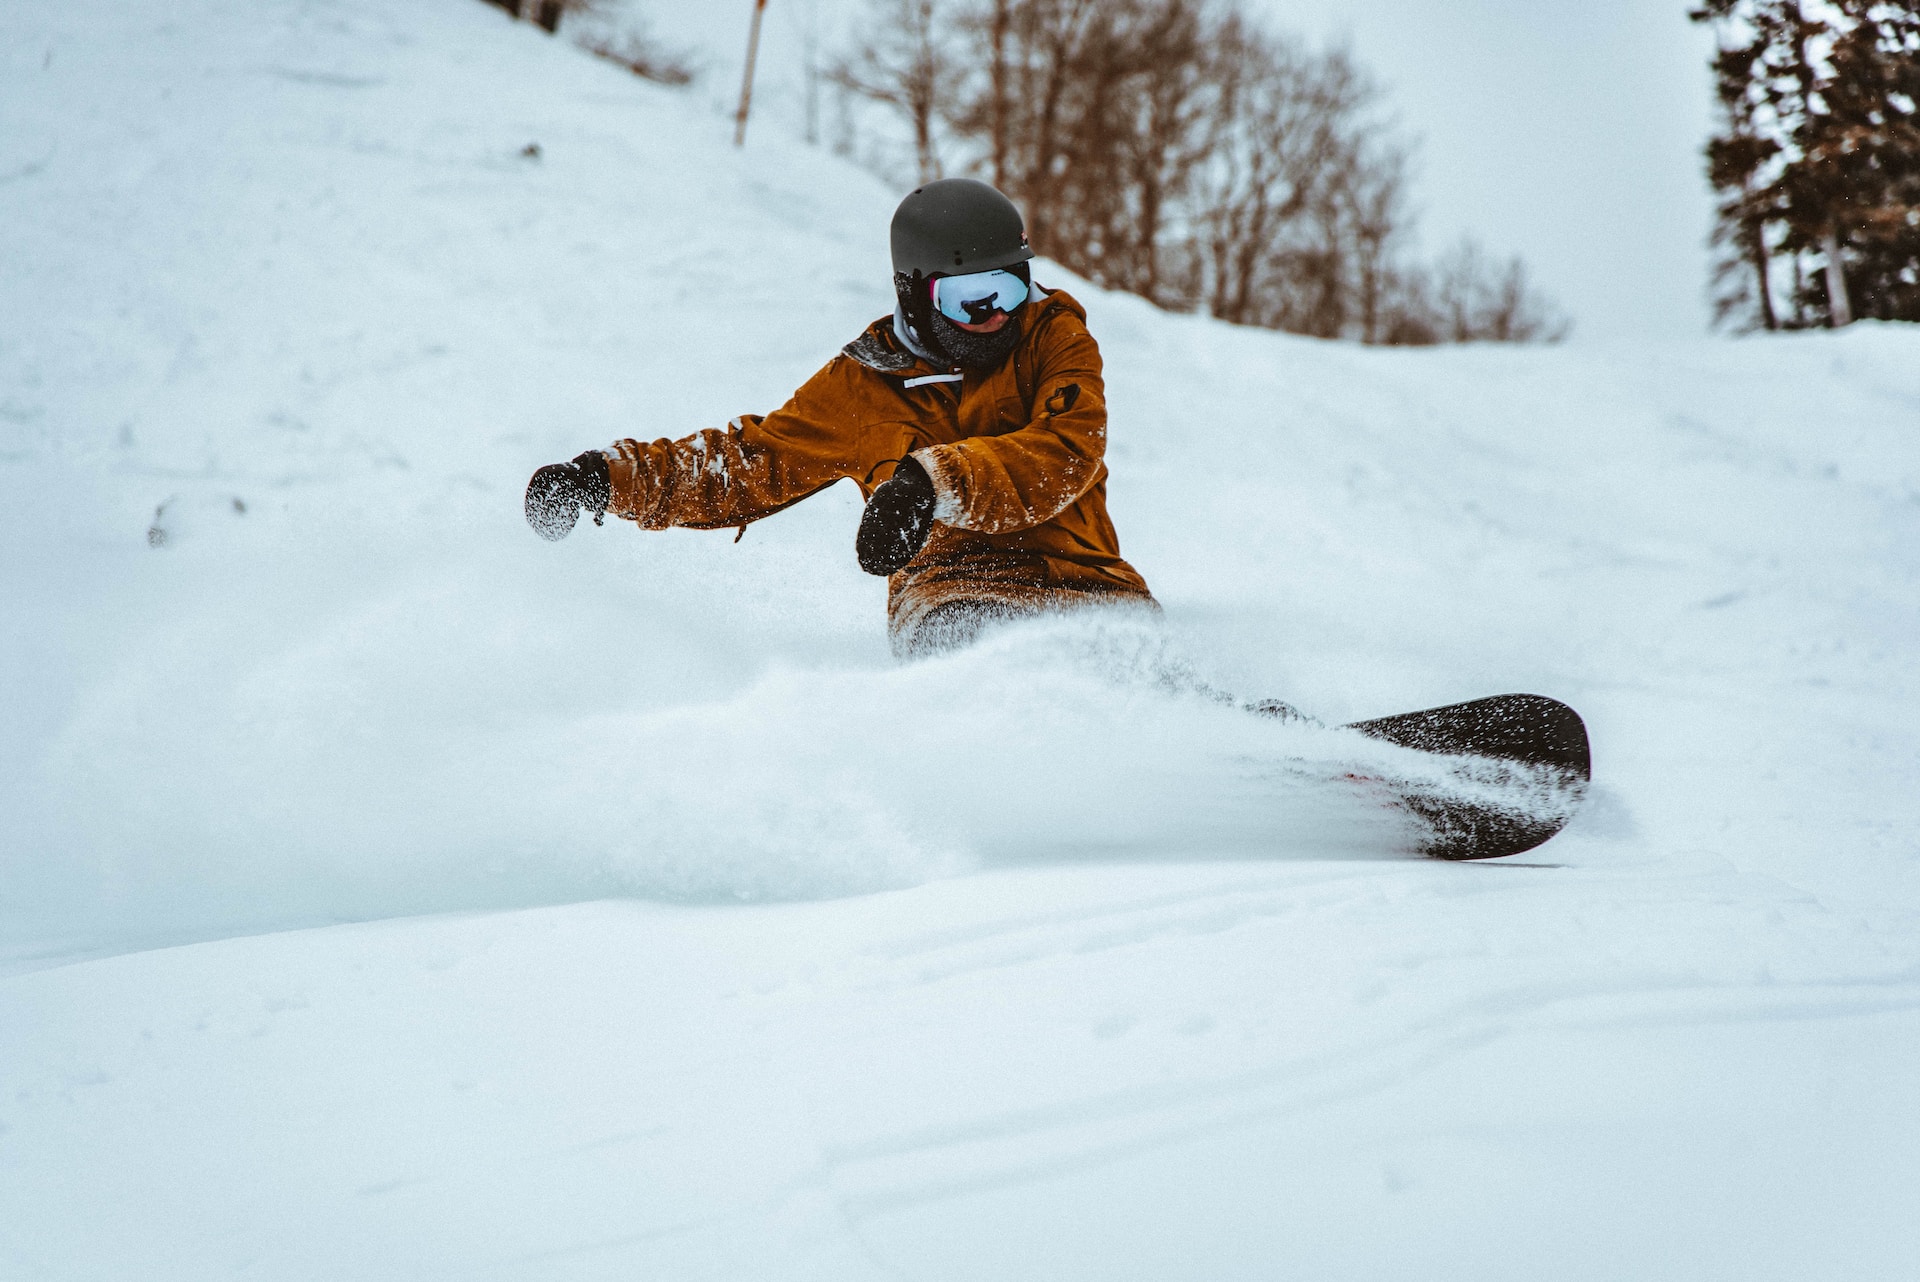 Snowboarden: Vorteile für Körper & Gesundheit